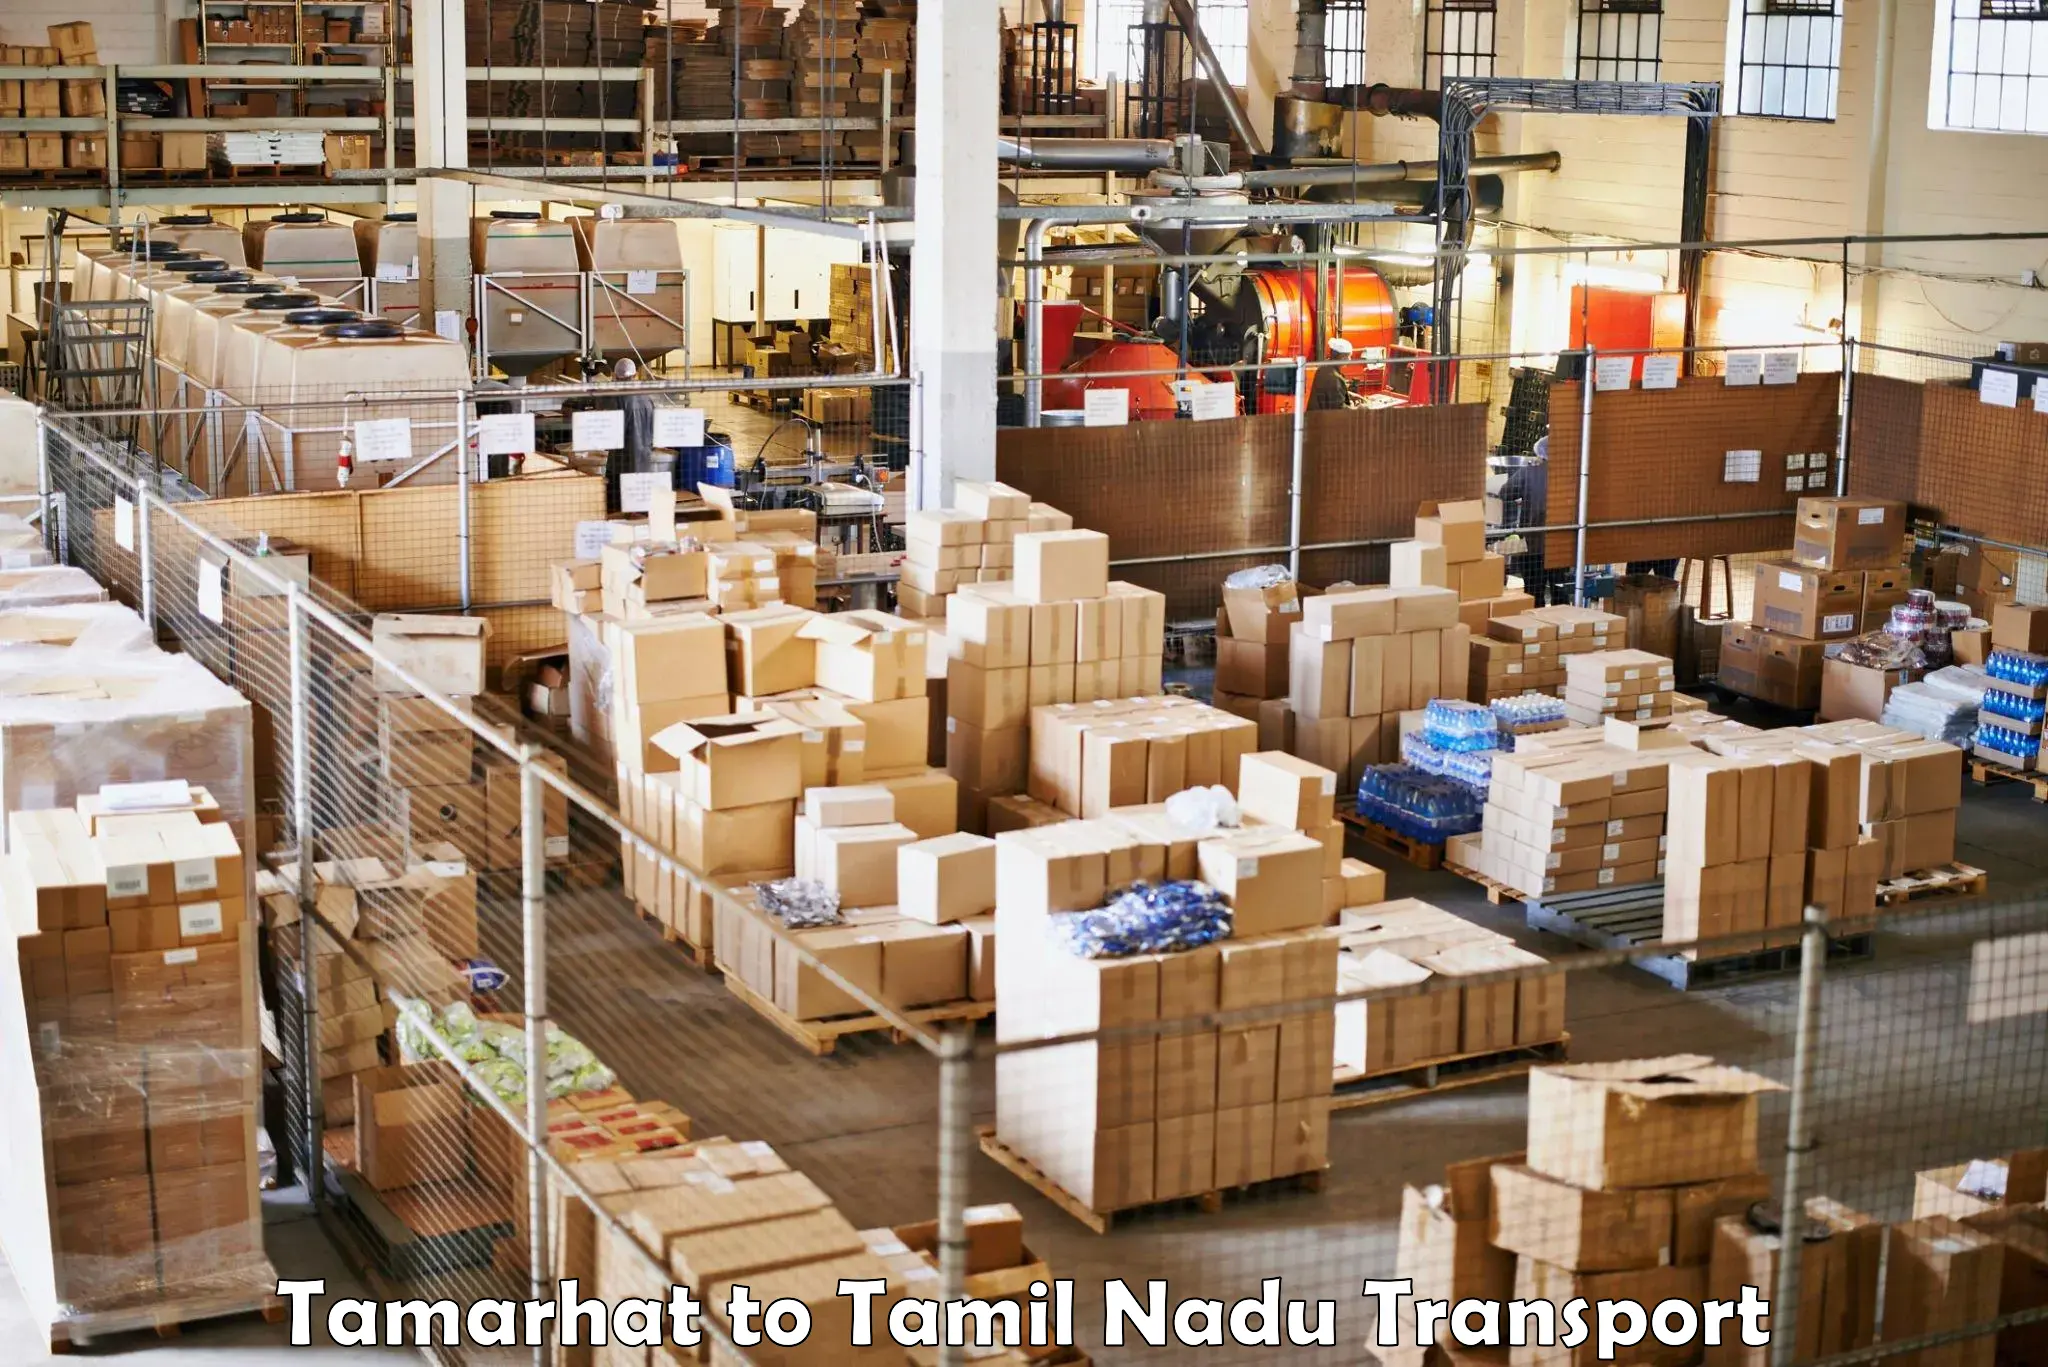 Shipping services Tamarhat to Tirupattur